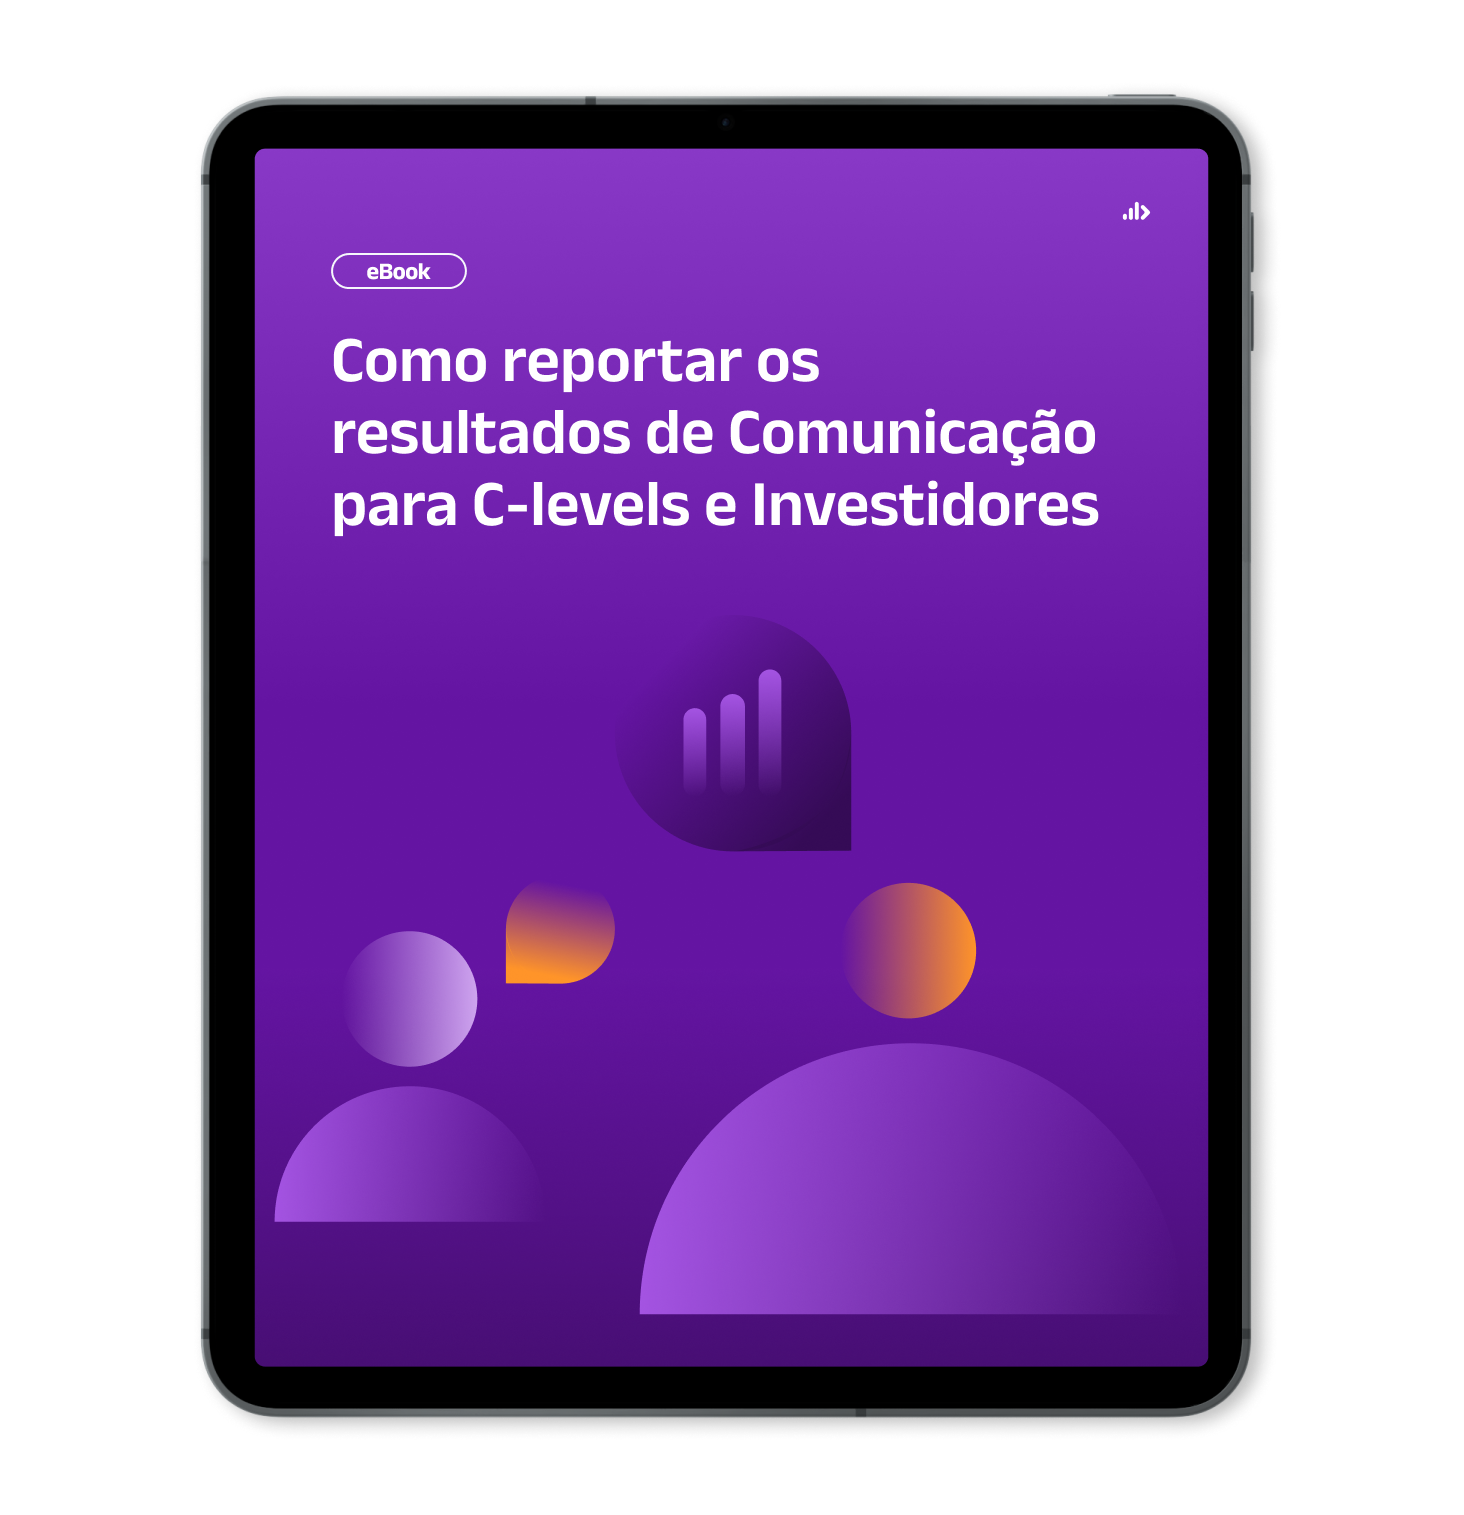 Mockup de Tablet com capa do Ebook_ Como reportar os resultados de Comunicação para C-levels e Investidores